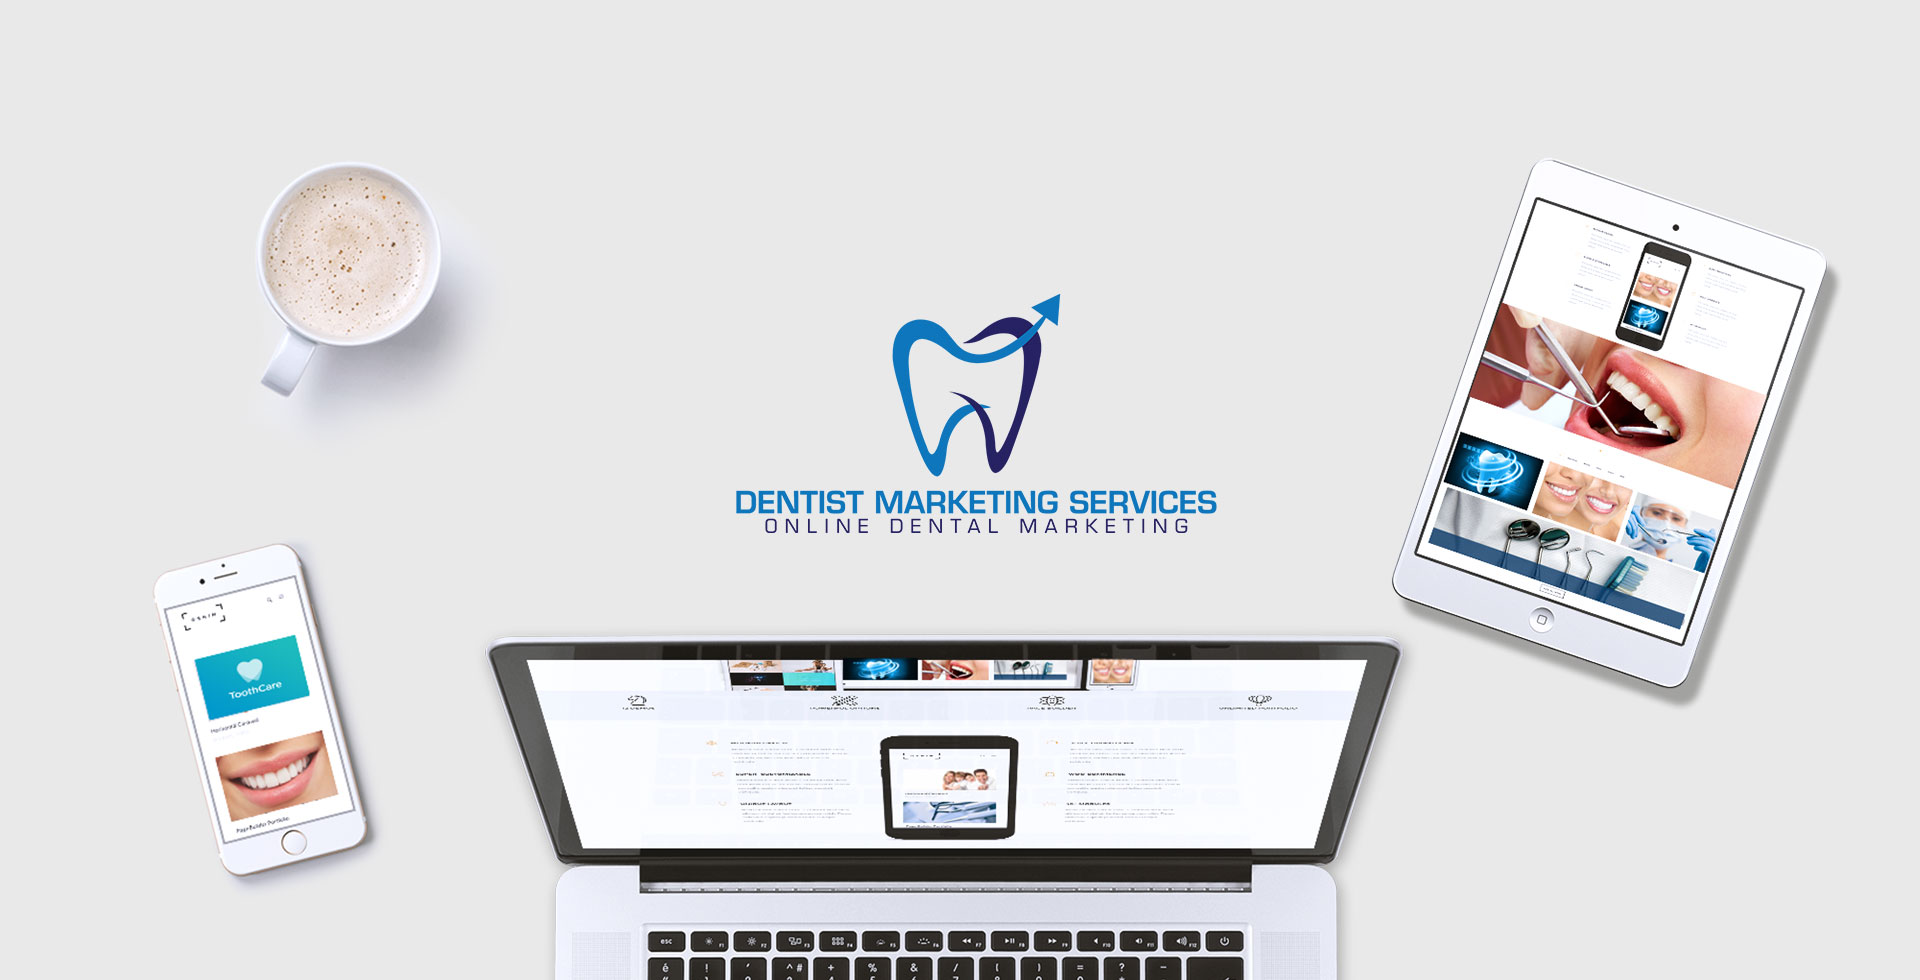 Dentist-Marketing-Services-Background